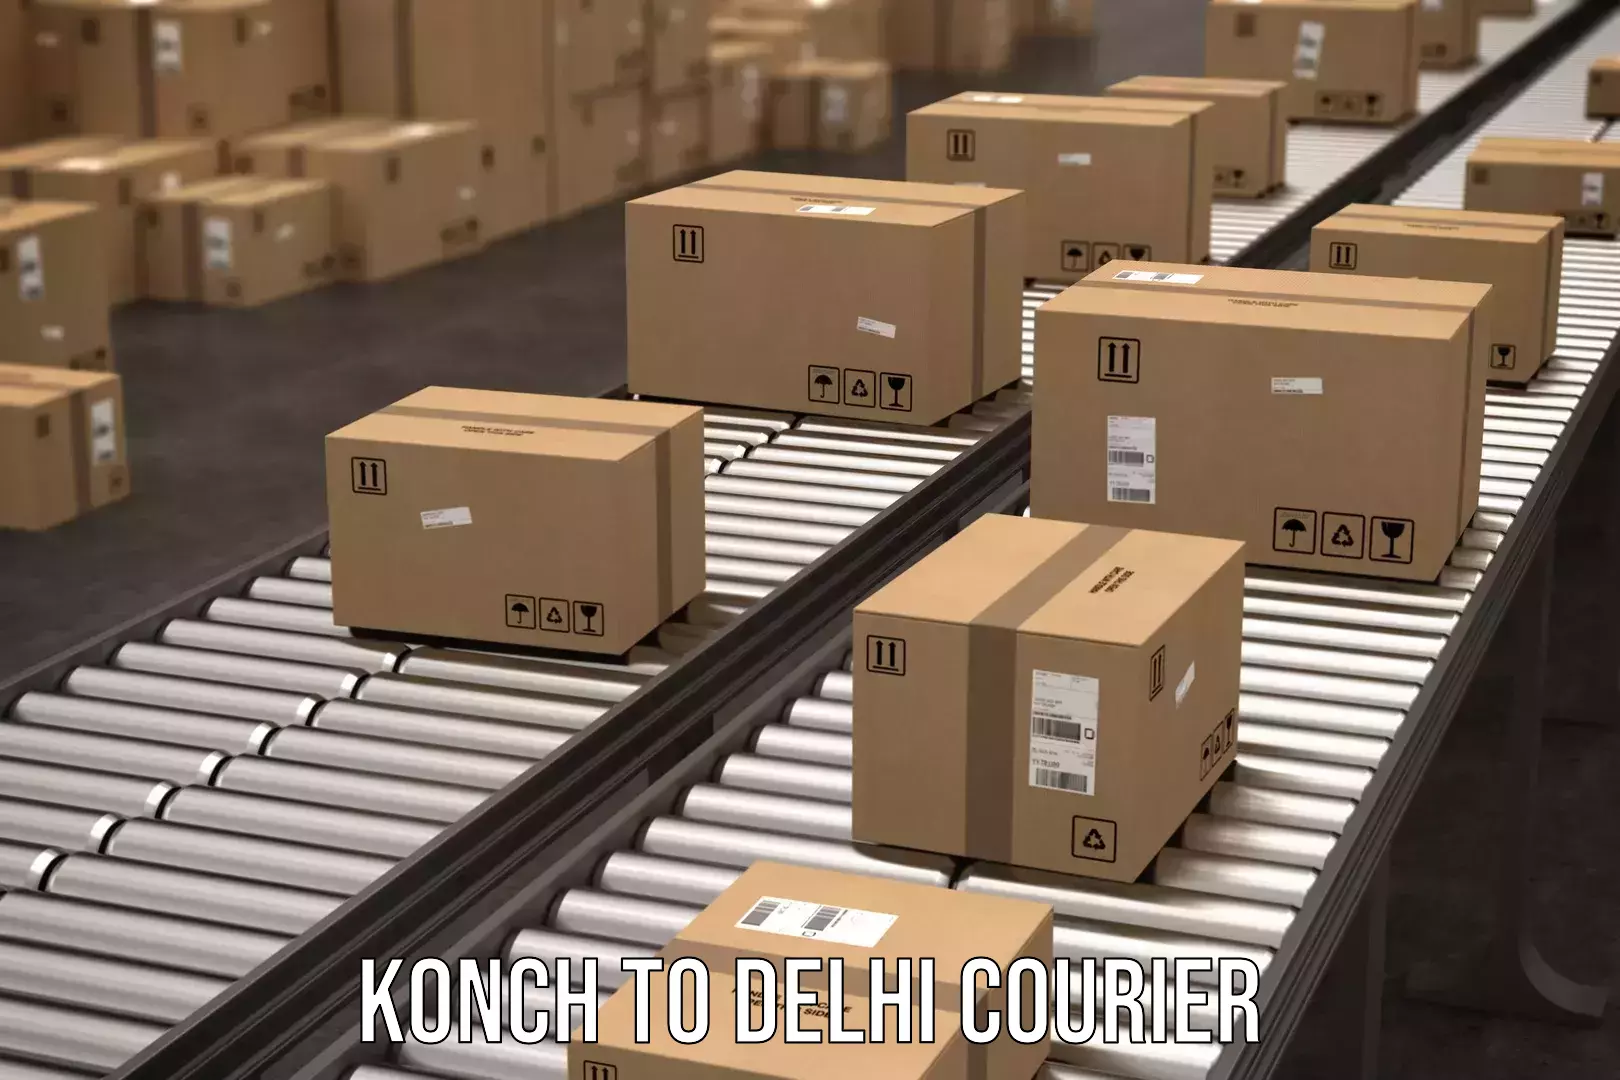 Return courier service Konch to IIT Delhi